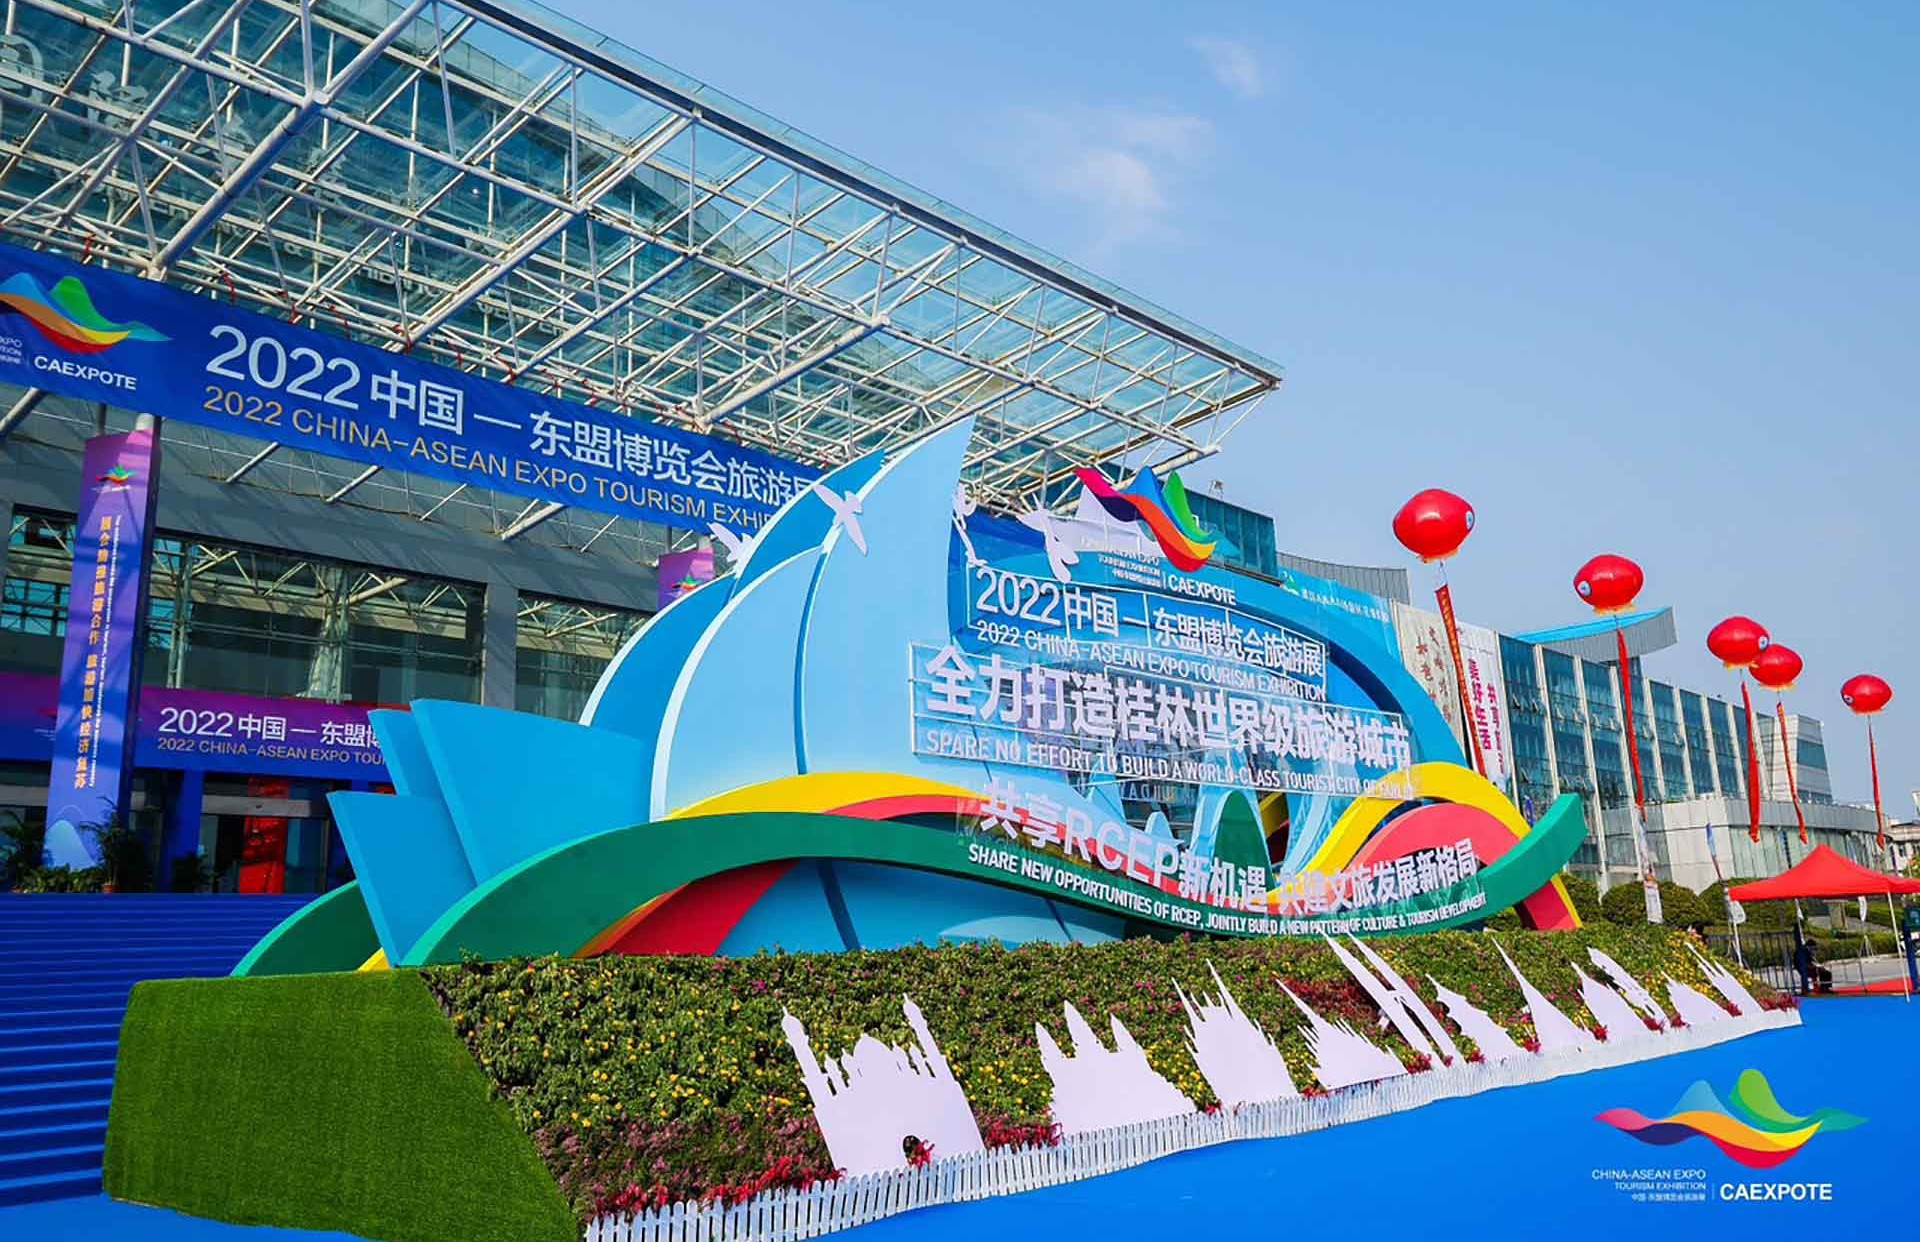 Gian hàng Việt Nam được quan tâm rộng rãi tại Hội chợ Du lịch Trung Quốc-ASEAN 2022